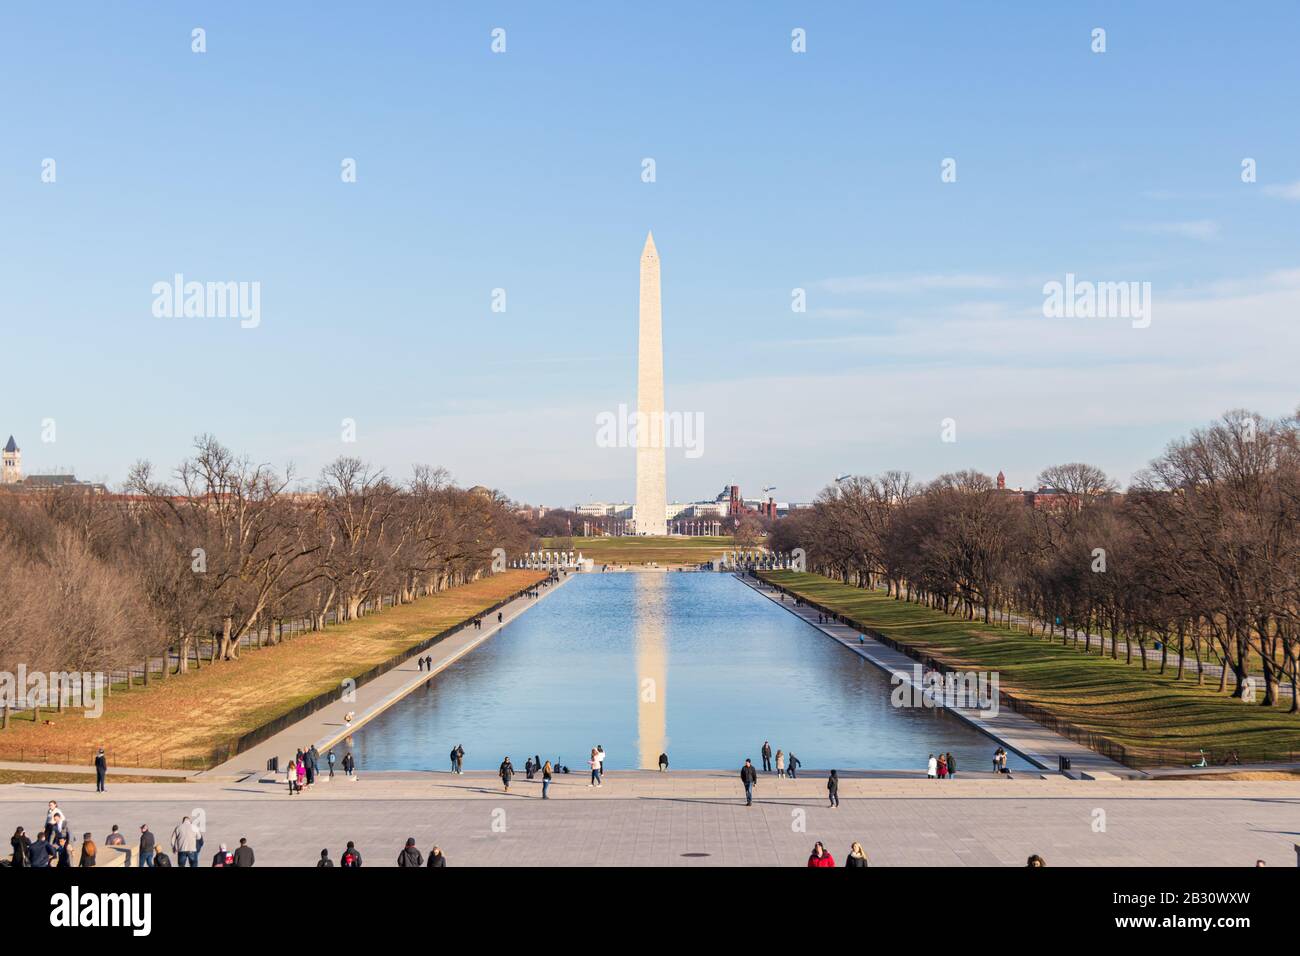 Le Washington Monument a vu depuis les marches du Lincoln Memorial un jour clair, reflet clair dans la piscine réfléchissante. Banque D'Images